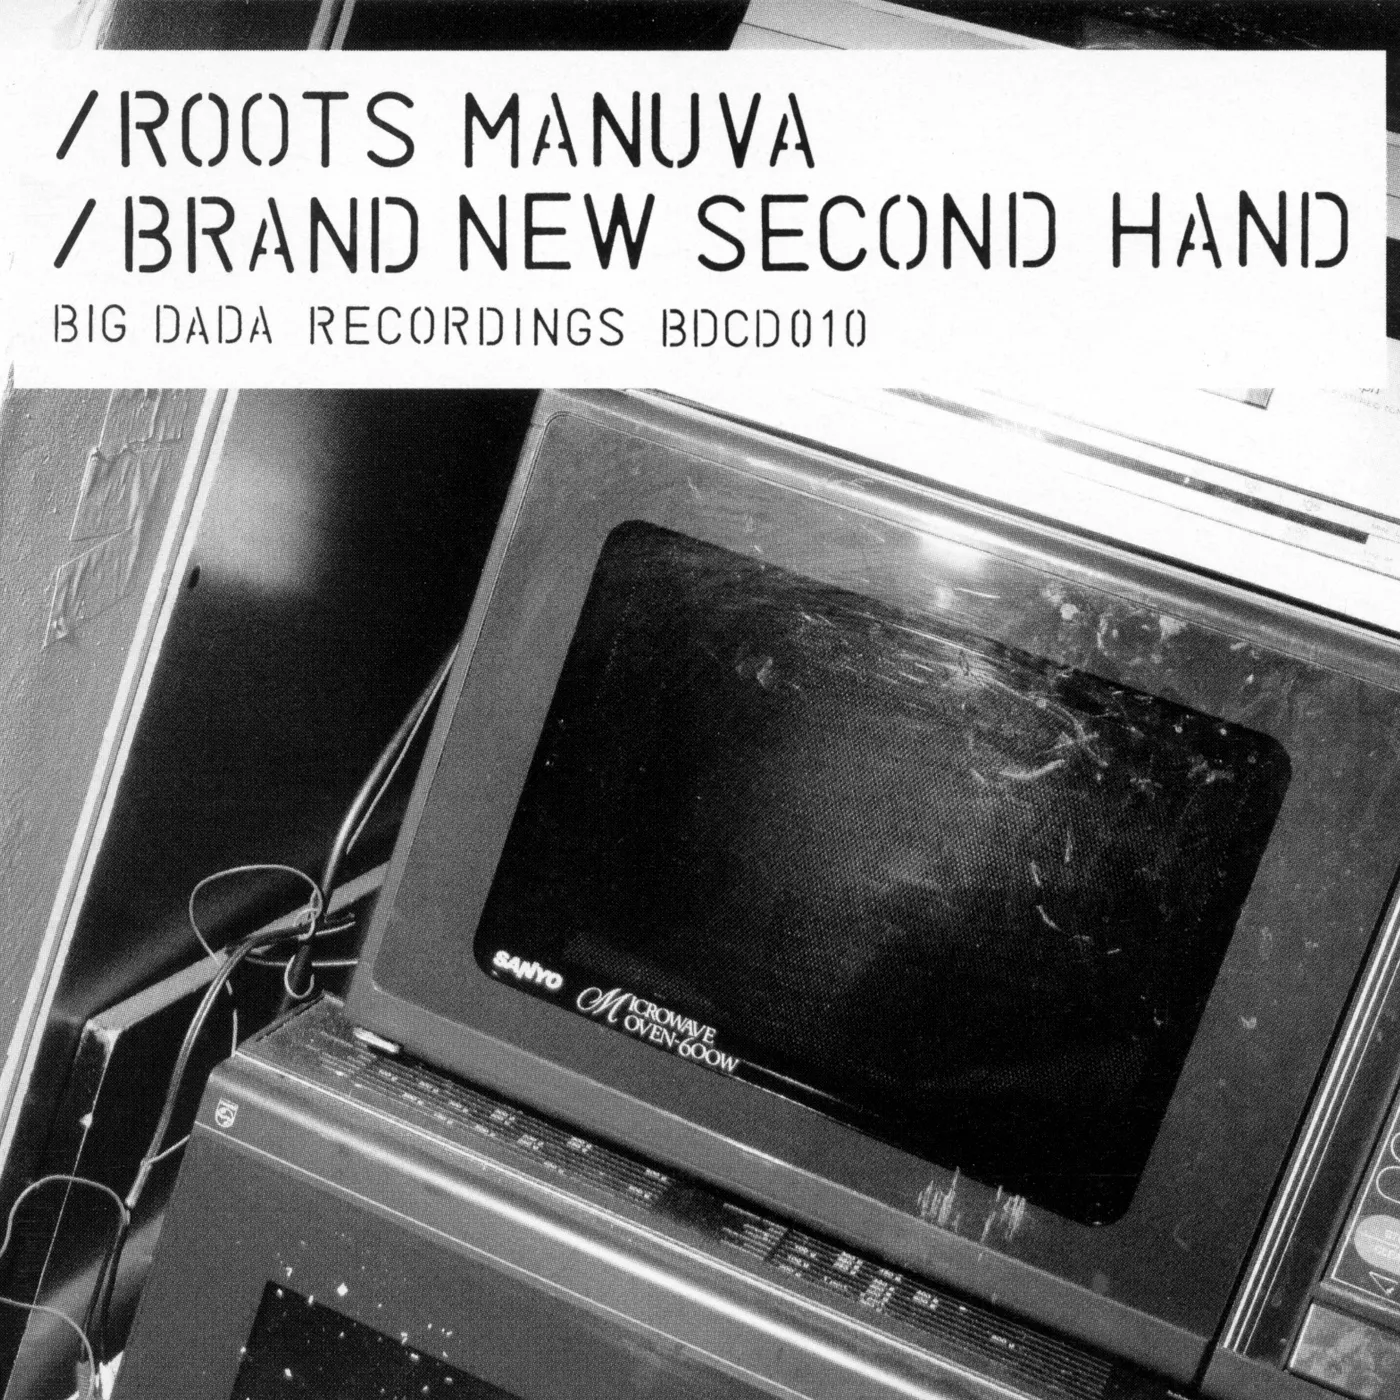 Buy Brand New Second Hand via Rough Trade